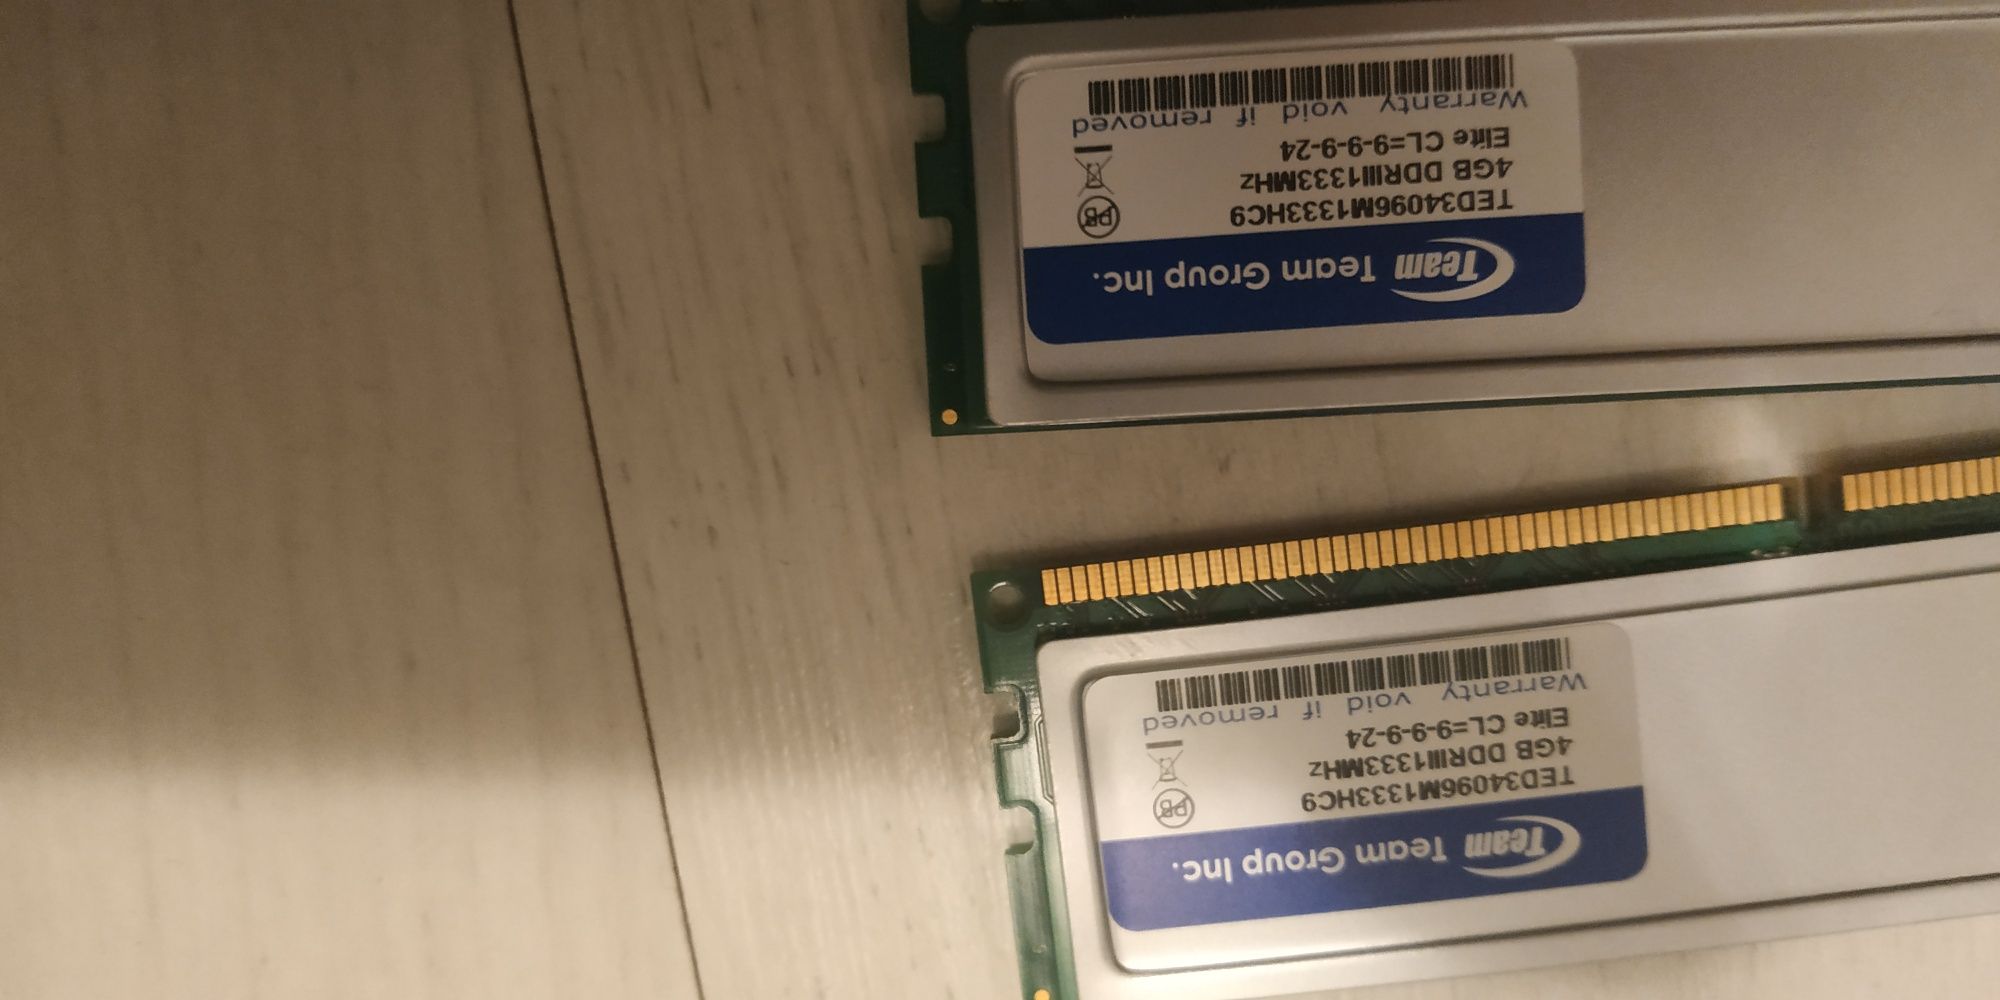 Komputer Gigabyte Intel Pentium G860 3Ghz zasilacz Bequiet 350w